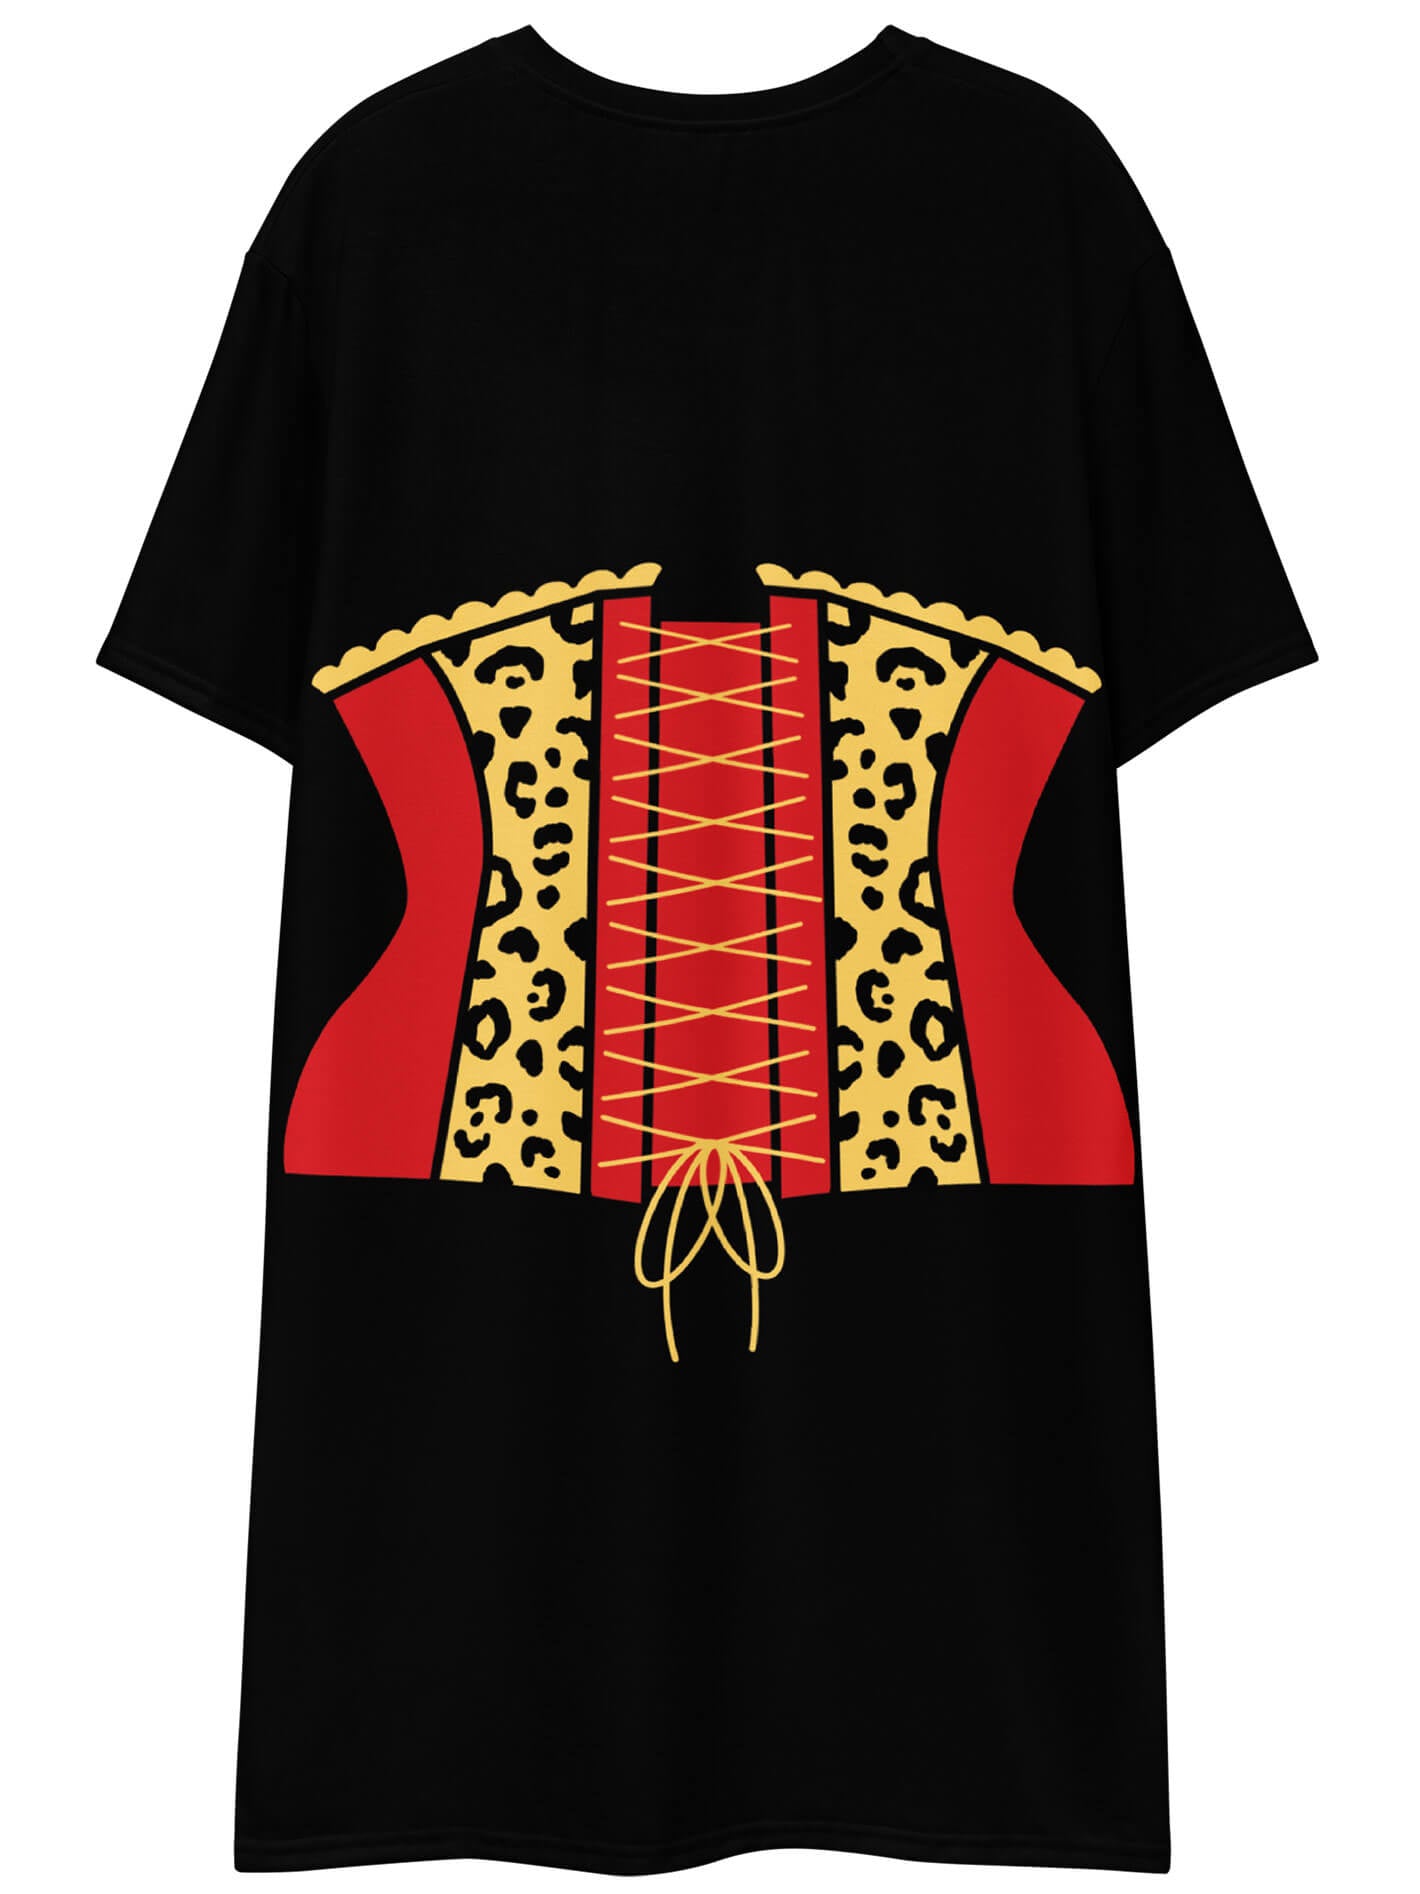 Plus size leopard corset dress.